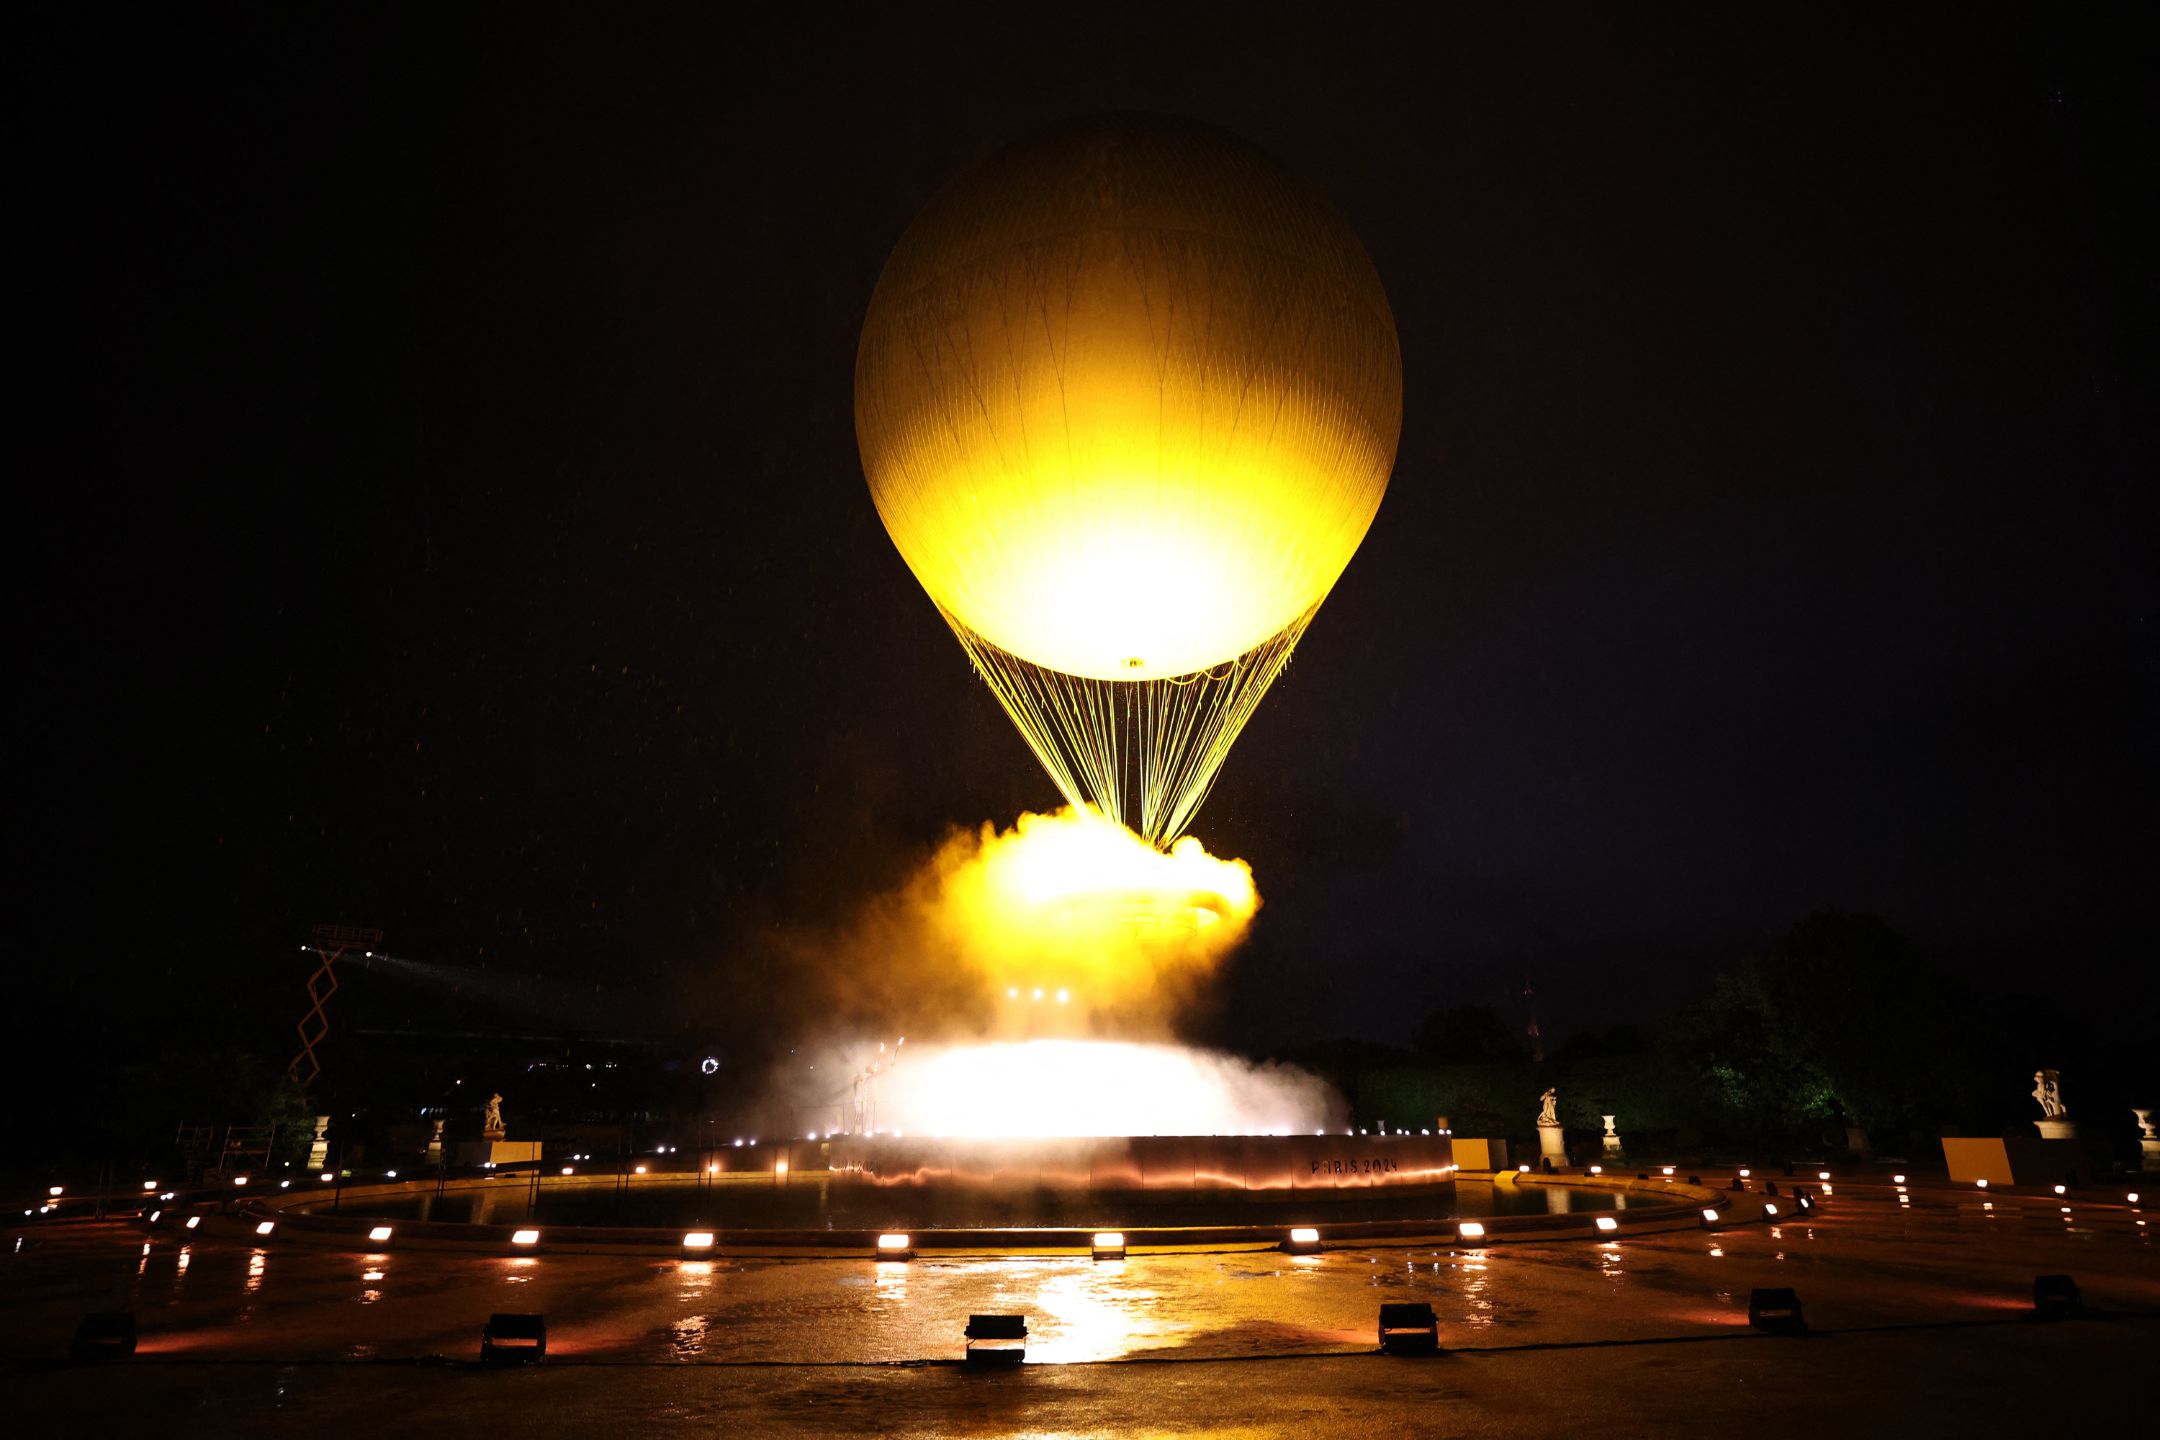 圣火炬升空照耀夜空  巴黎奥运正式开幕